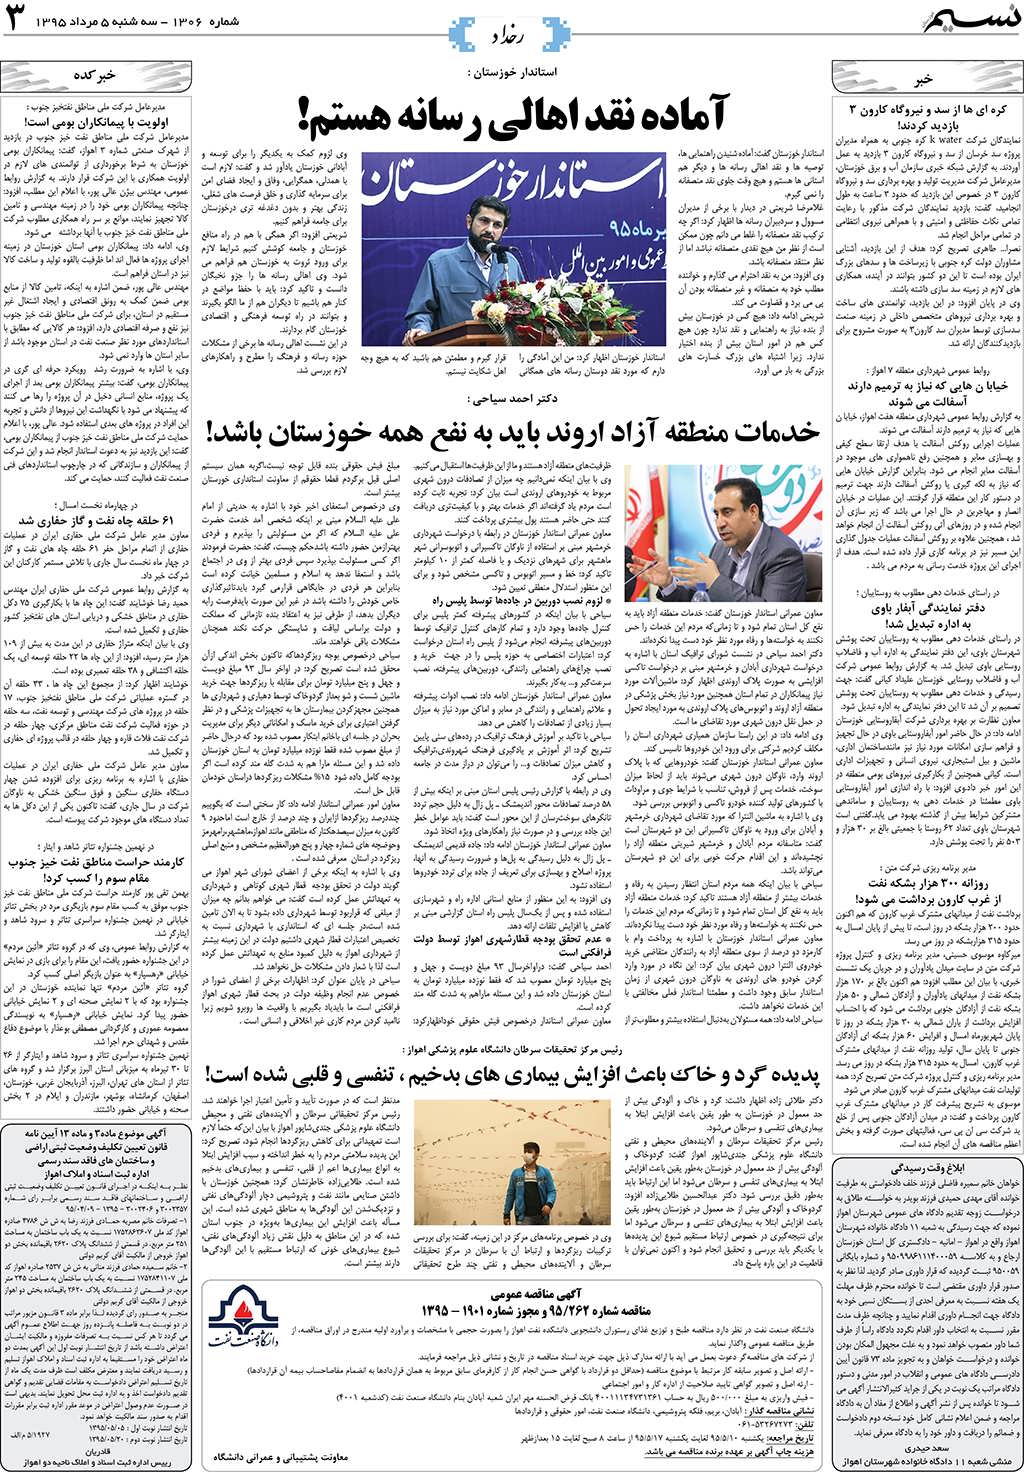 صفحه رخداد روزنامه نسیم شماره 1306